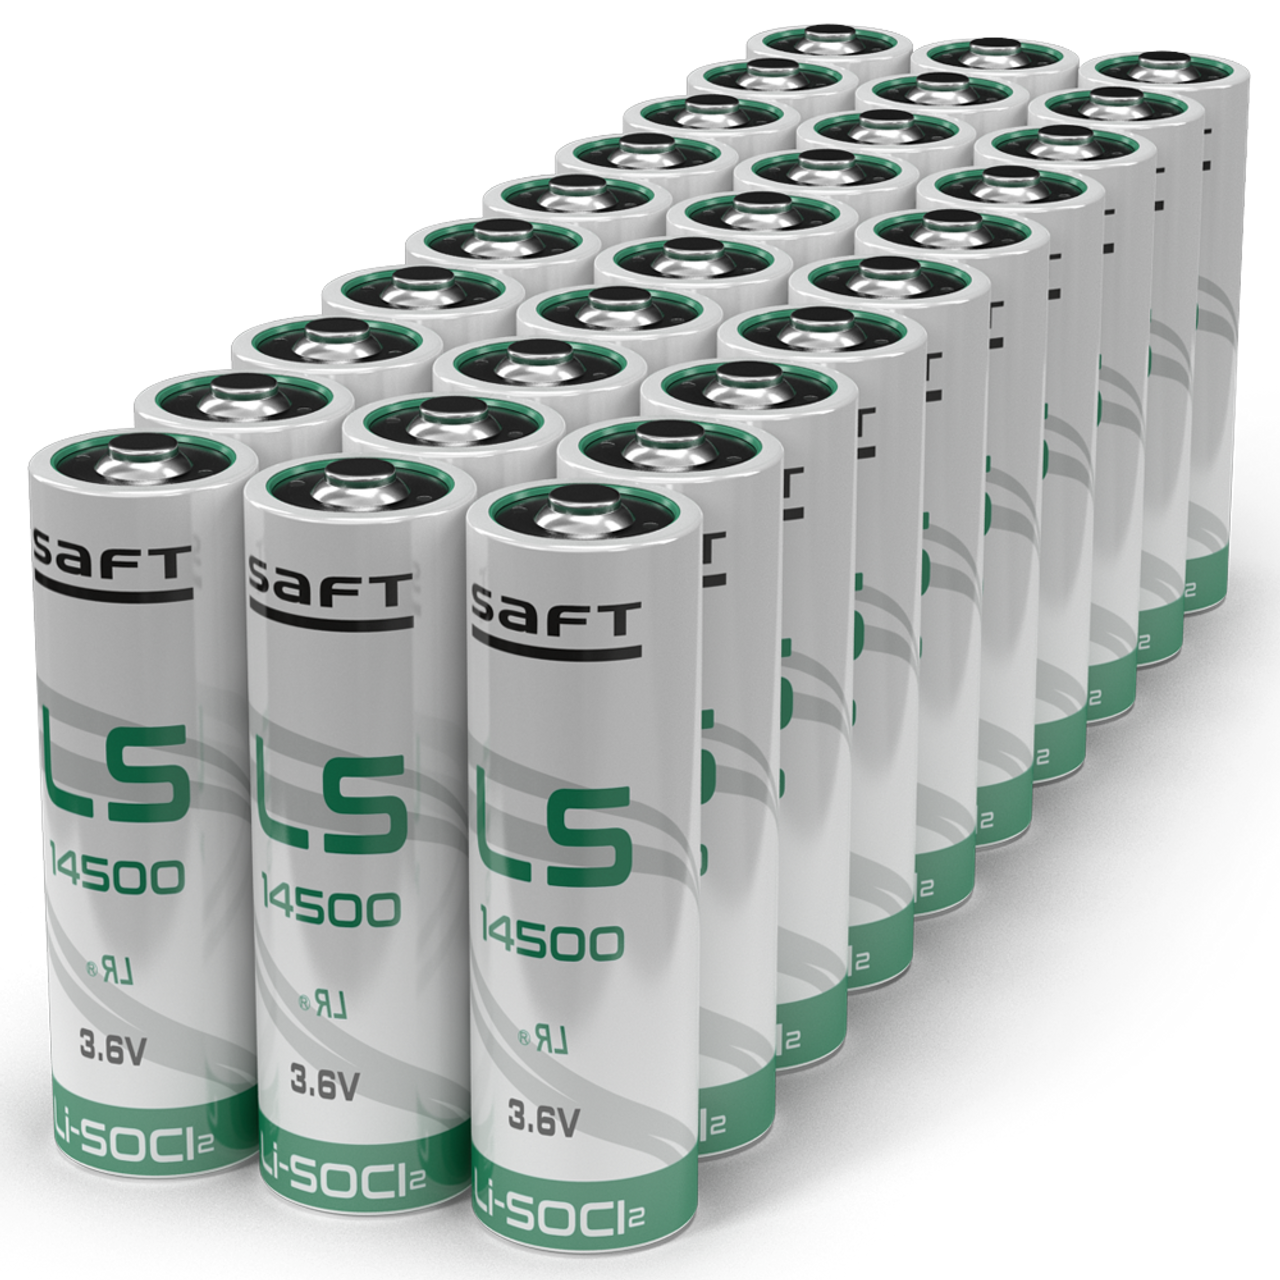 SAFT LS14500 AA 3.6 Volt Lithium Battery (2600 mAh)